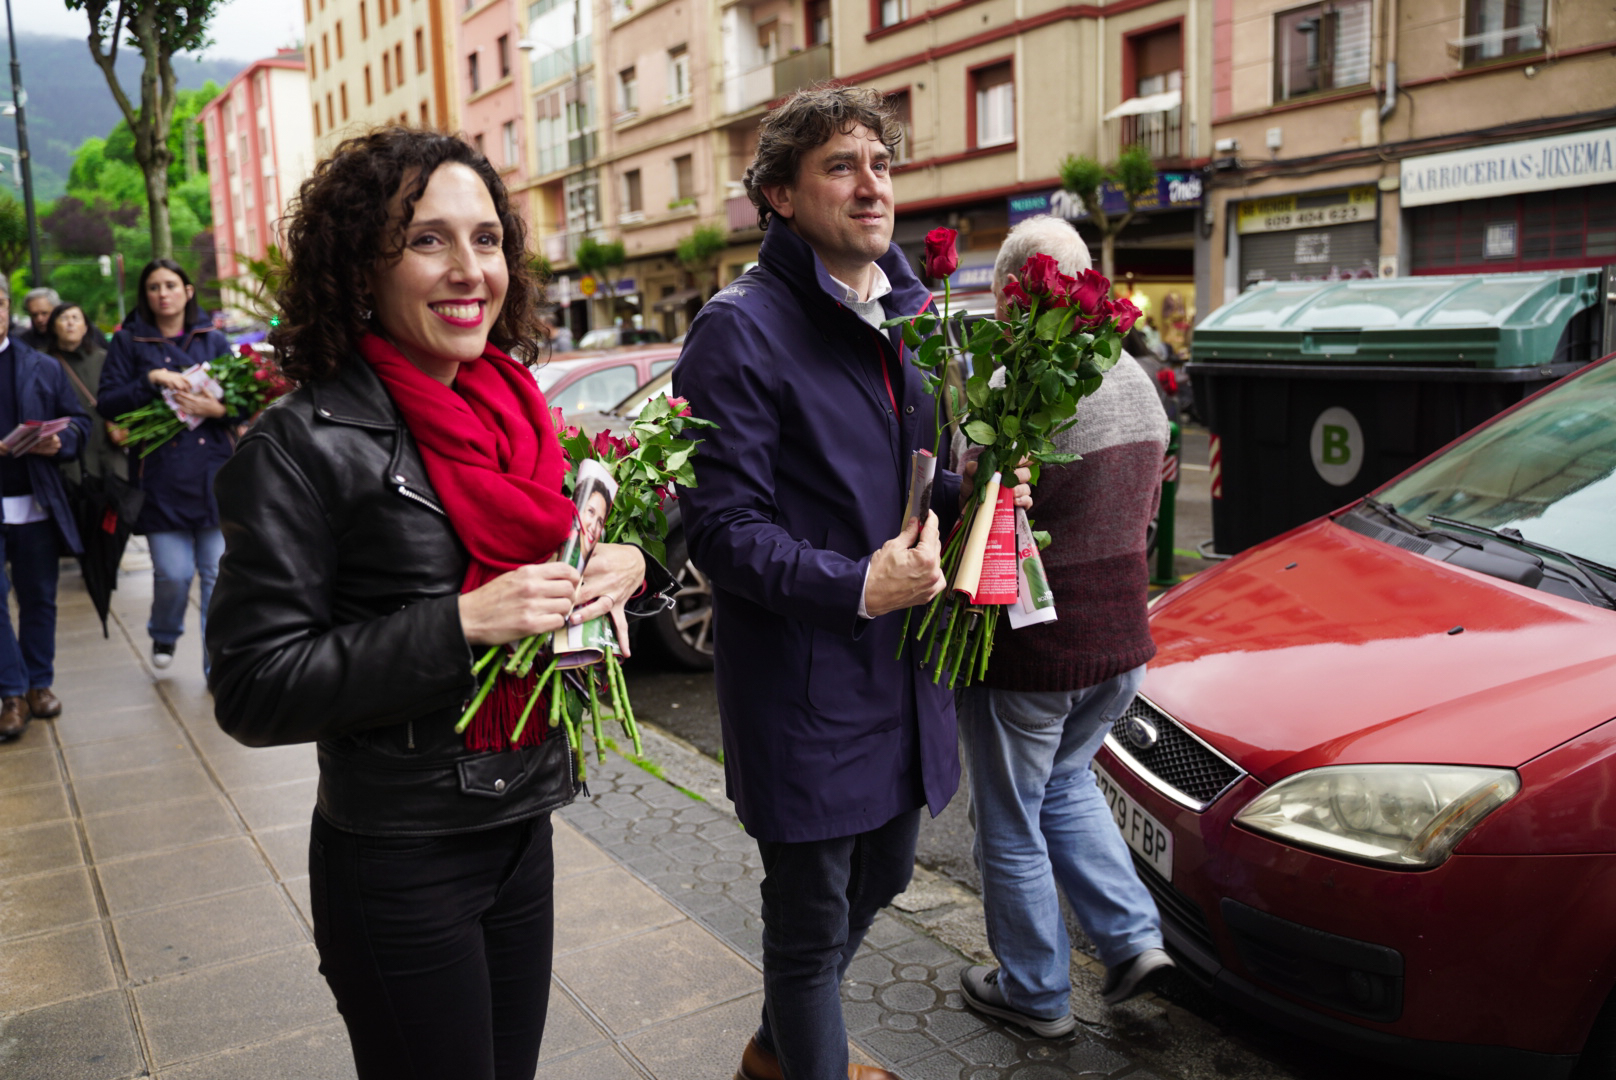 El Secretario General del PSE-EE, Eneko Andueza, repartiendo rosas en el barrio de Rekalde junto a la candidata socialista a la alcaldía de Bilbao, Nora Abete | Foto: Socialistas Vascos